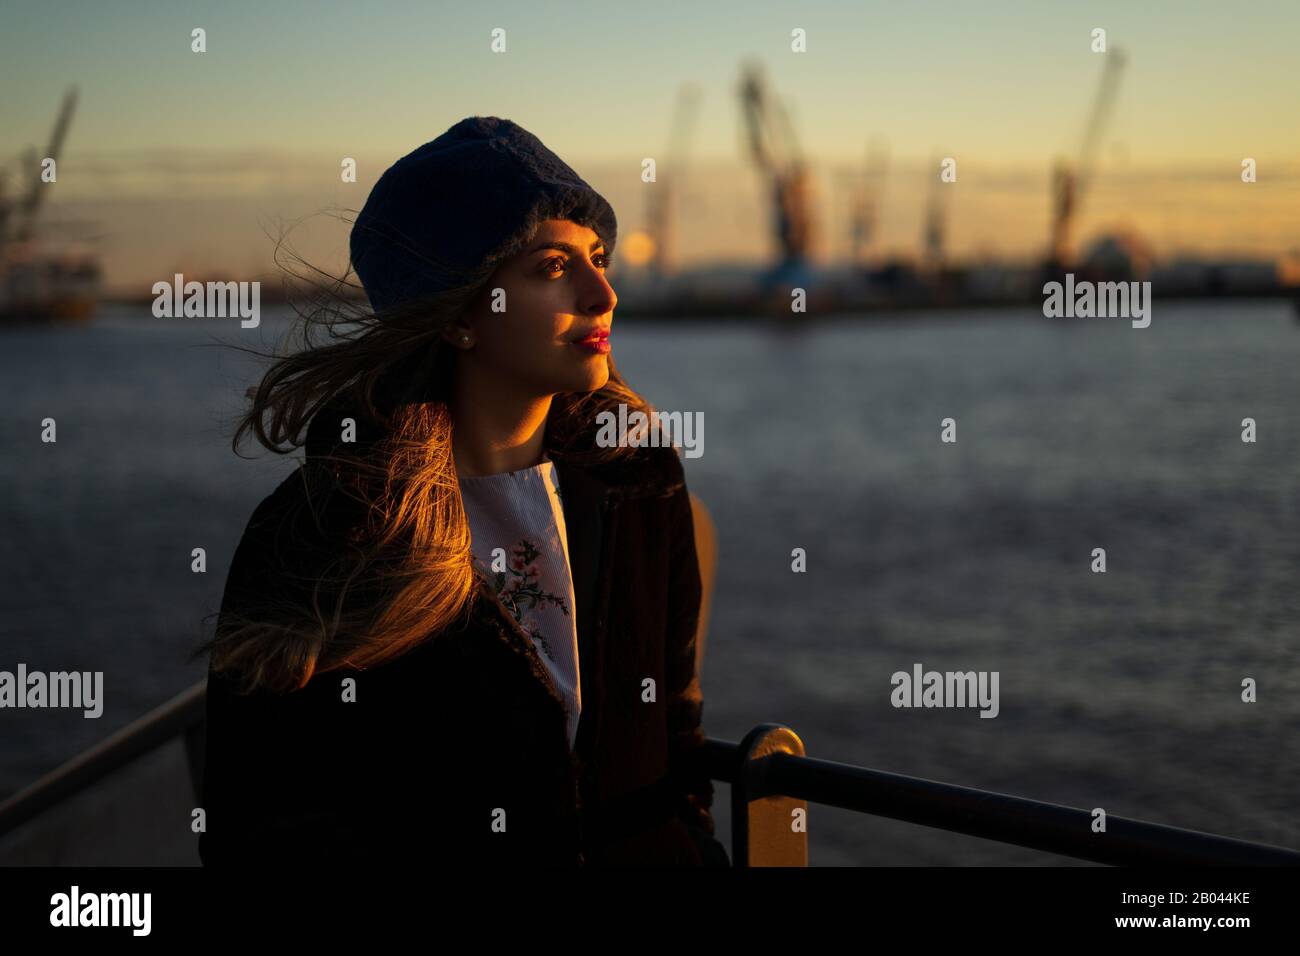 Jeune fille du Moyen-Orient modèle during un coucher de soleil dans le port de Hambourg. Banque D'Images